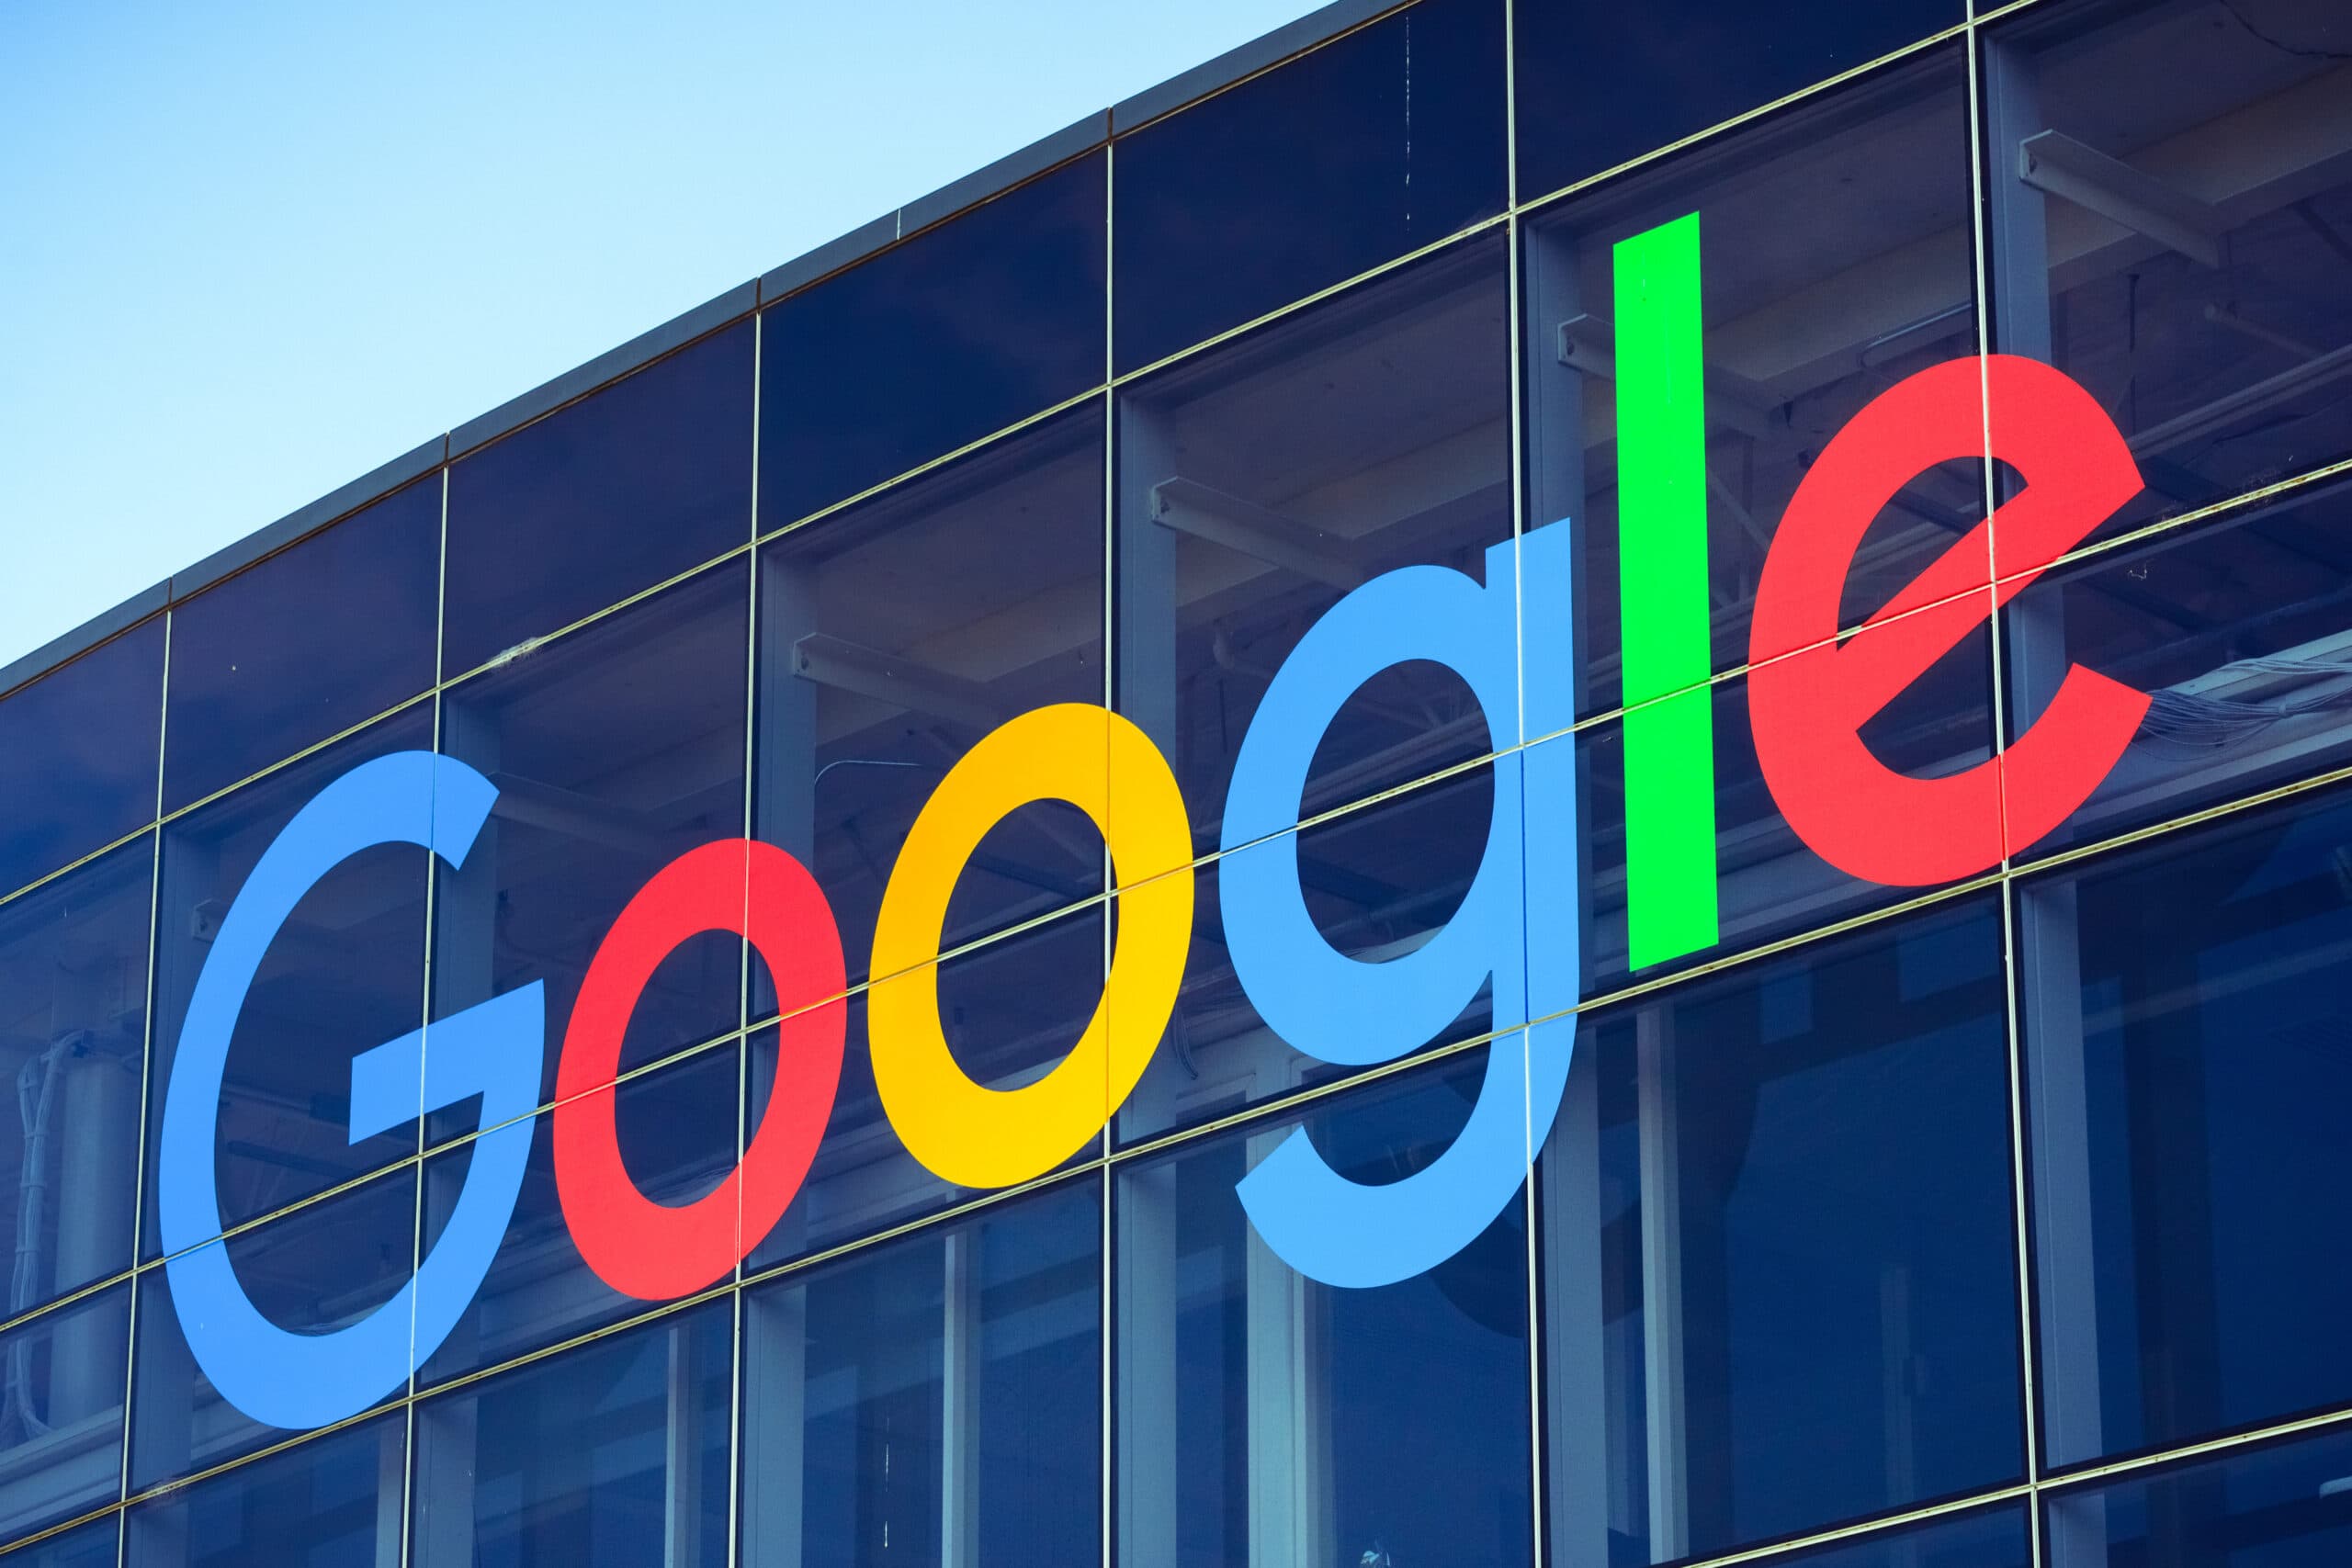 Google-Gründer Larry Page Sergei Brin